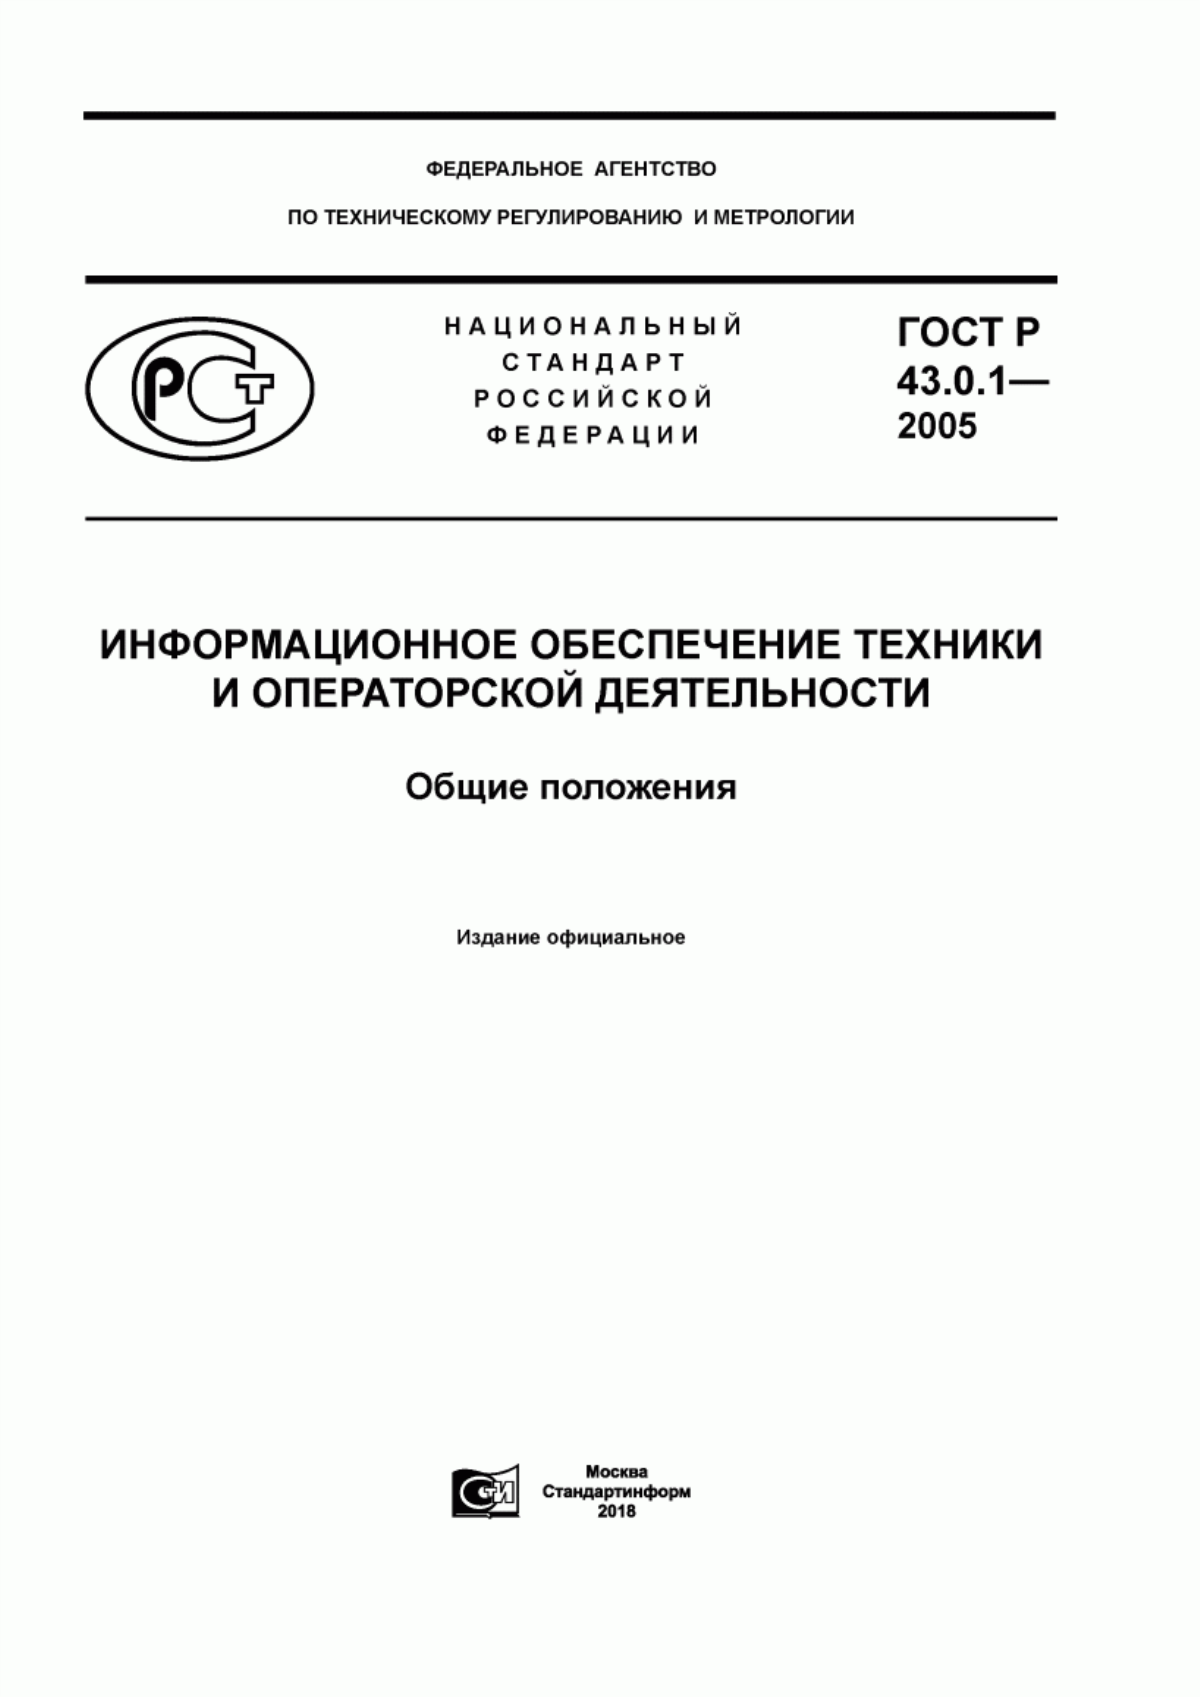 ГОСТ Р 43.0.1-2005 Информационное обеспечение техники и операторской деятельности. Общие положения